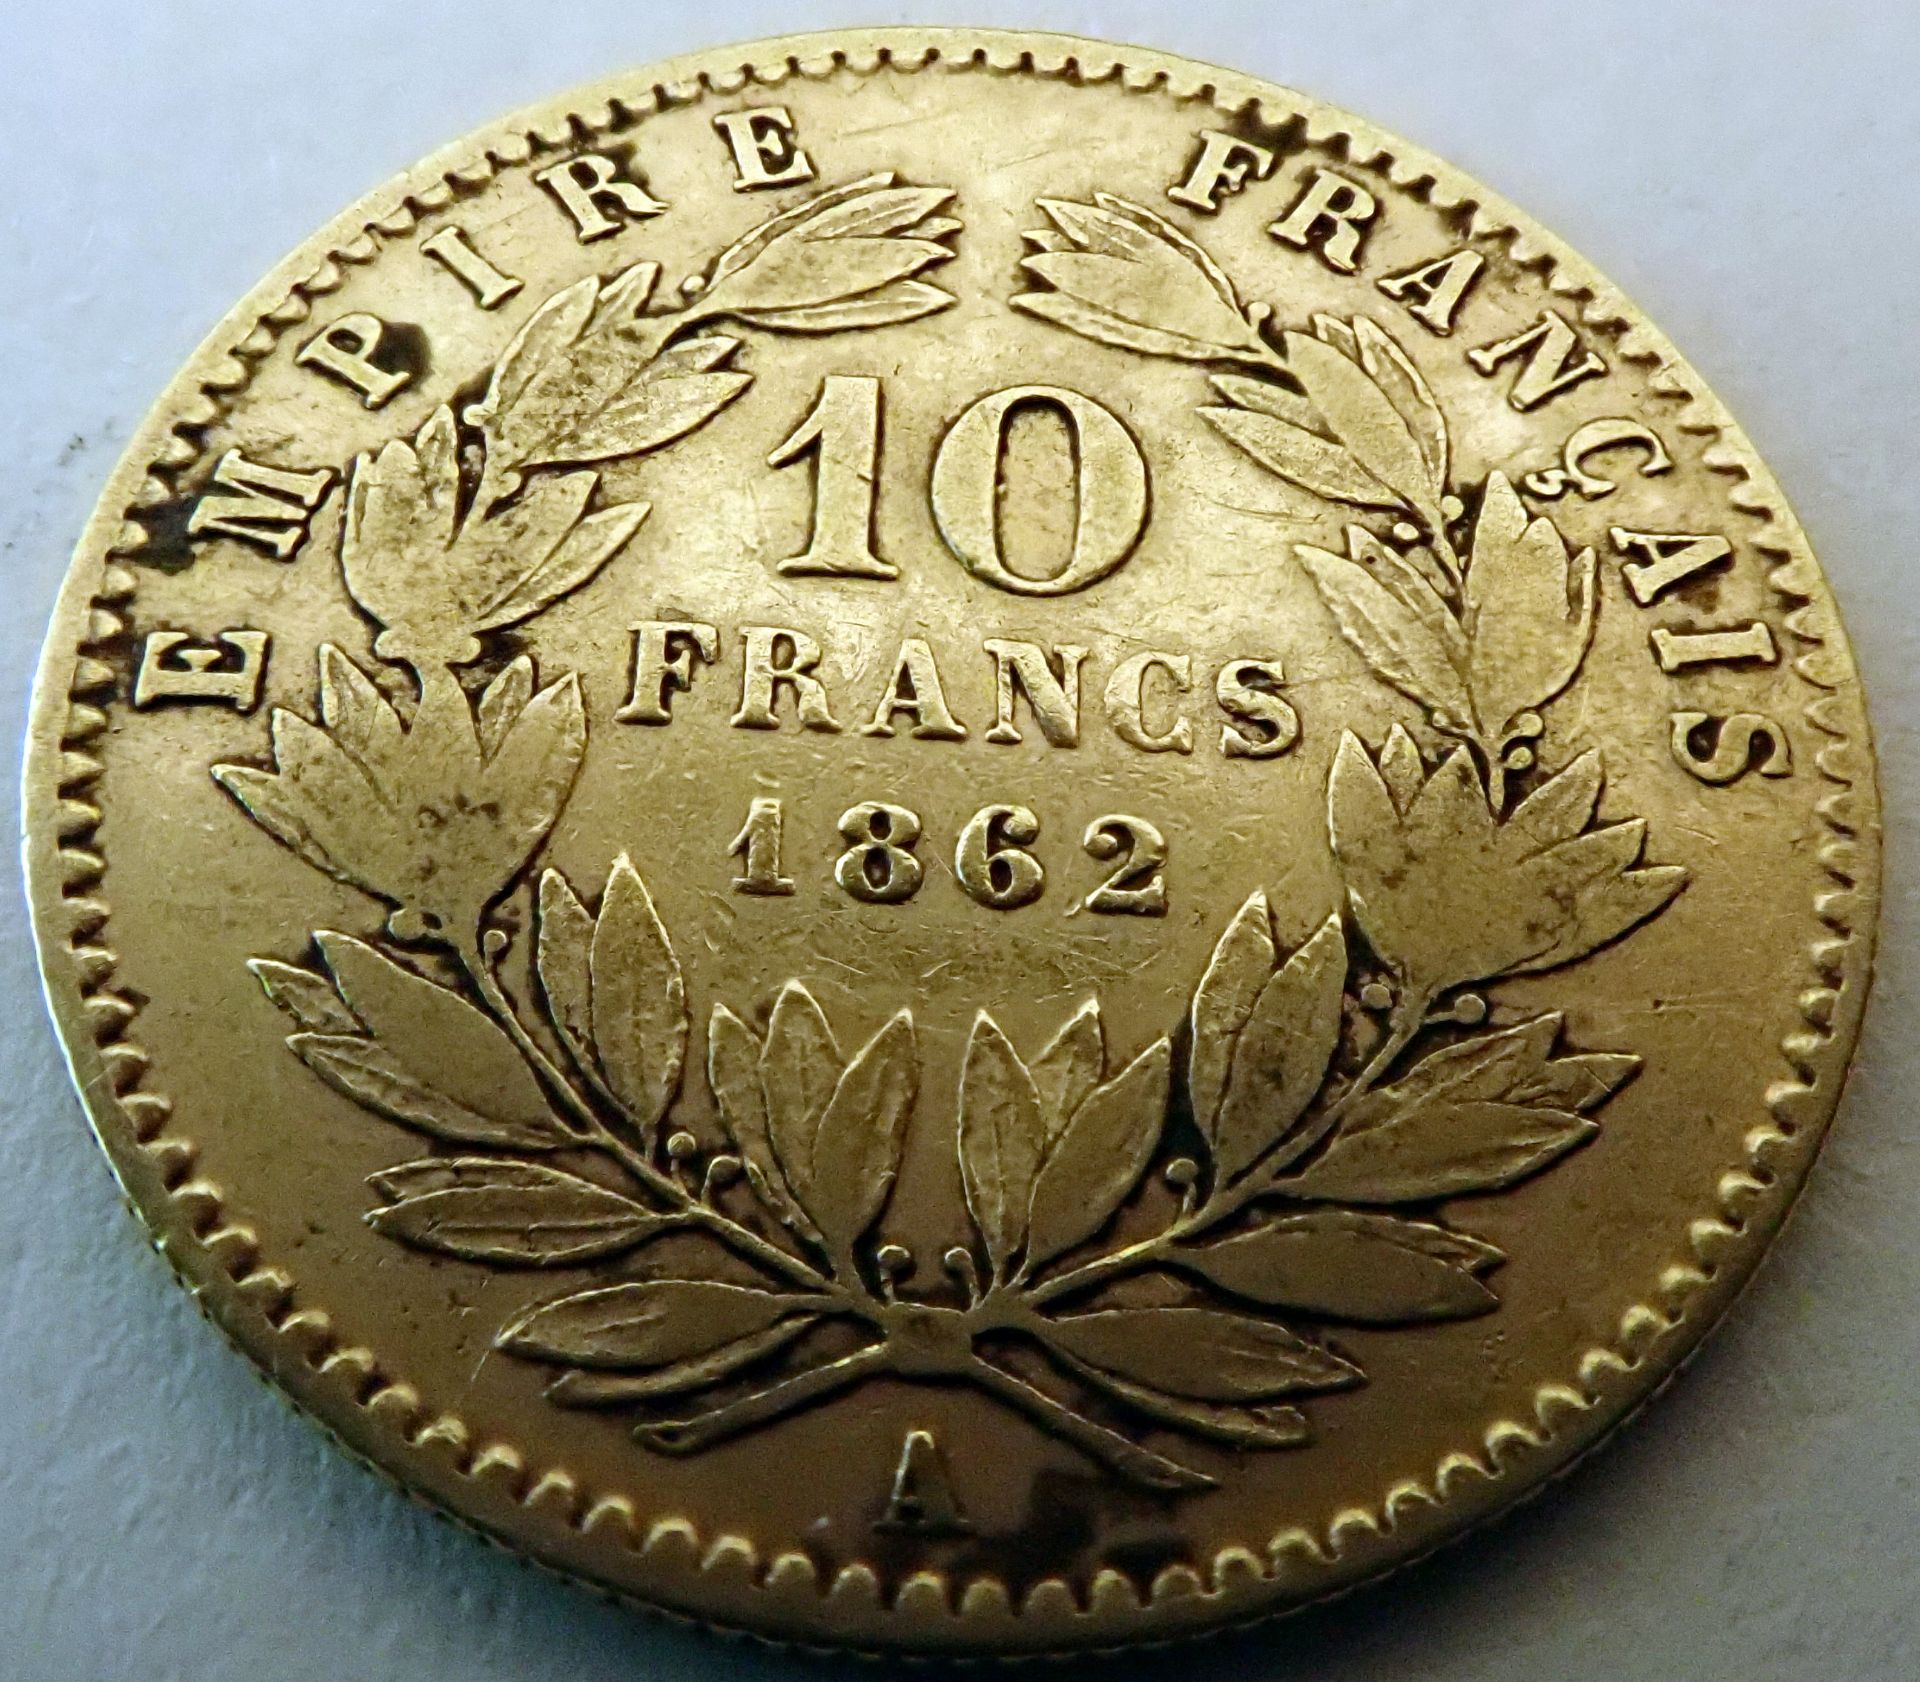 10 Francs - Napoleon III. 1891 - 1868 - Image 2 of 2